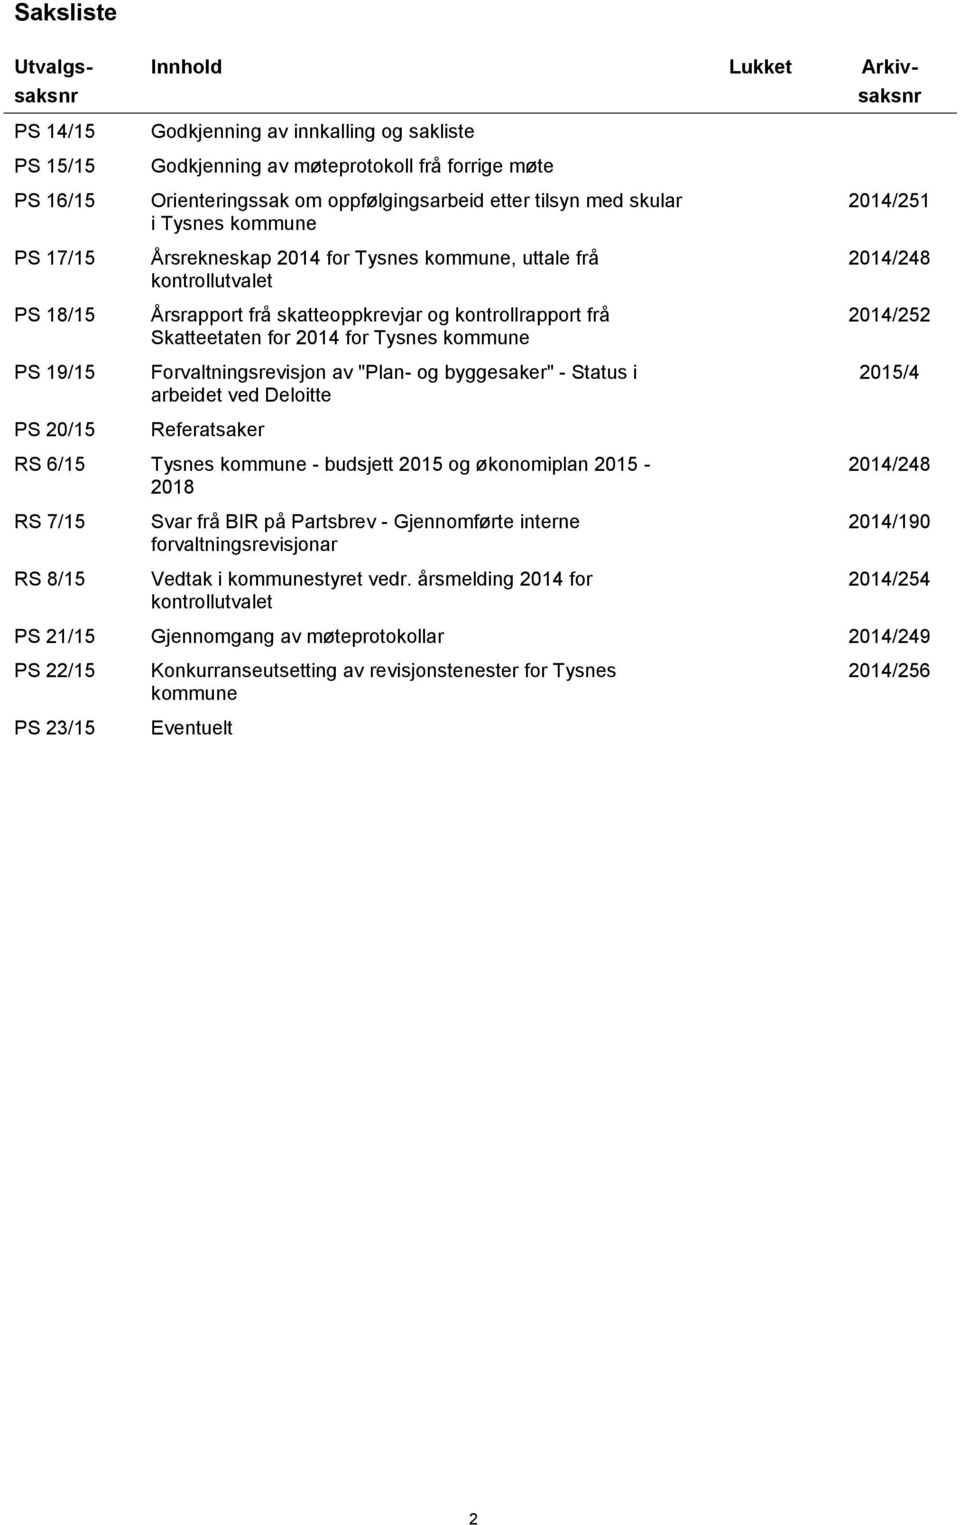 Skatteetaten for 2014 for Tysnes kommune Forvaltningsrevisjon av "Plan- og byggesaker" - Status i arbeidet ved Deloitte Referatsaker 2014/251 2014/248 2014/252 2015/4 RS 6/15 Tysnes kommune -